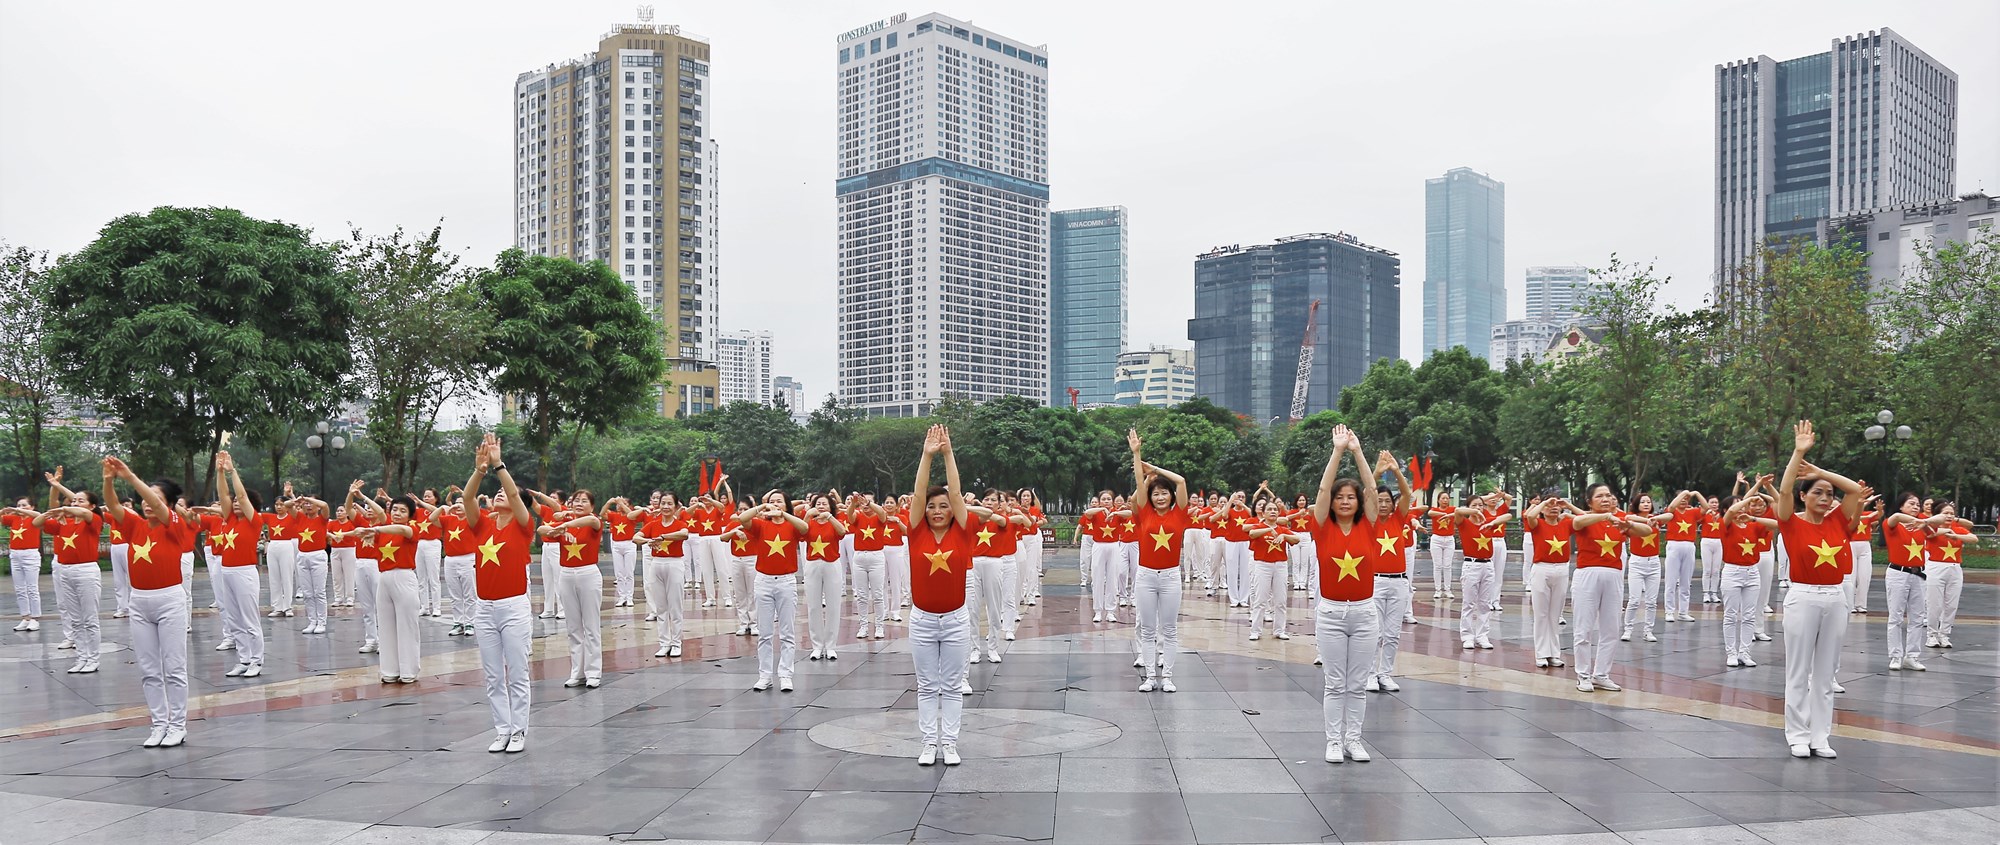 Phụ nữ Cầu Giấy rực rỡ sắc màu đồng diễn dân vũ mừng Chiến thắng Điện Biên Phủ - ảnh 6